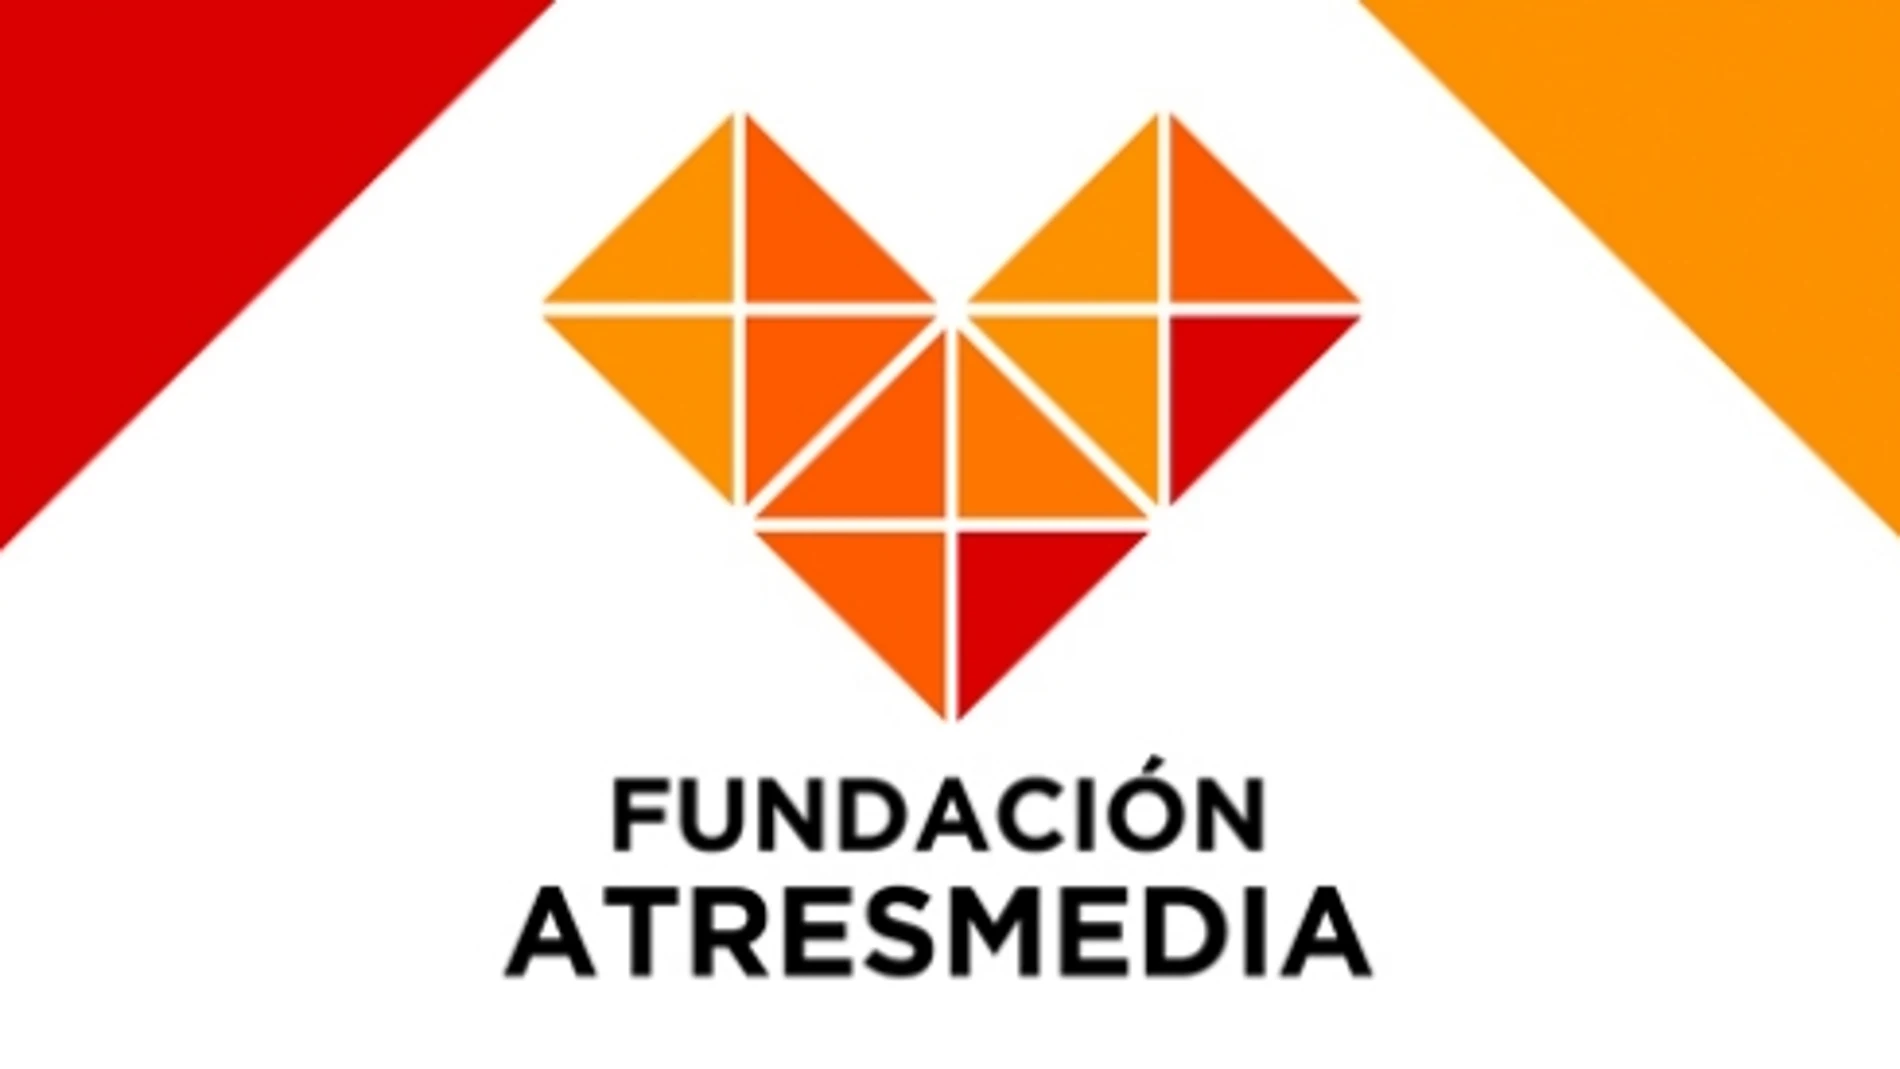 La Fundación Atresmedia, distinguida en Sevilla por sus valores sociales